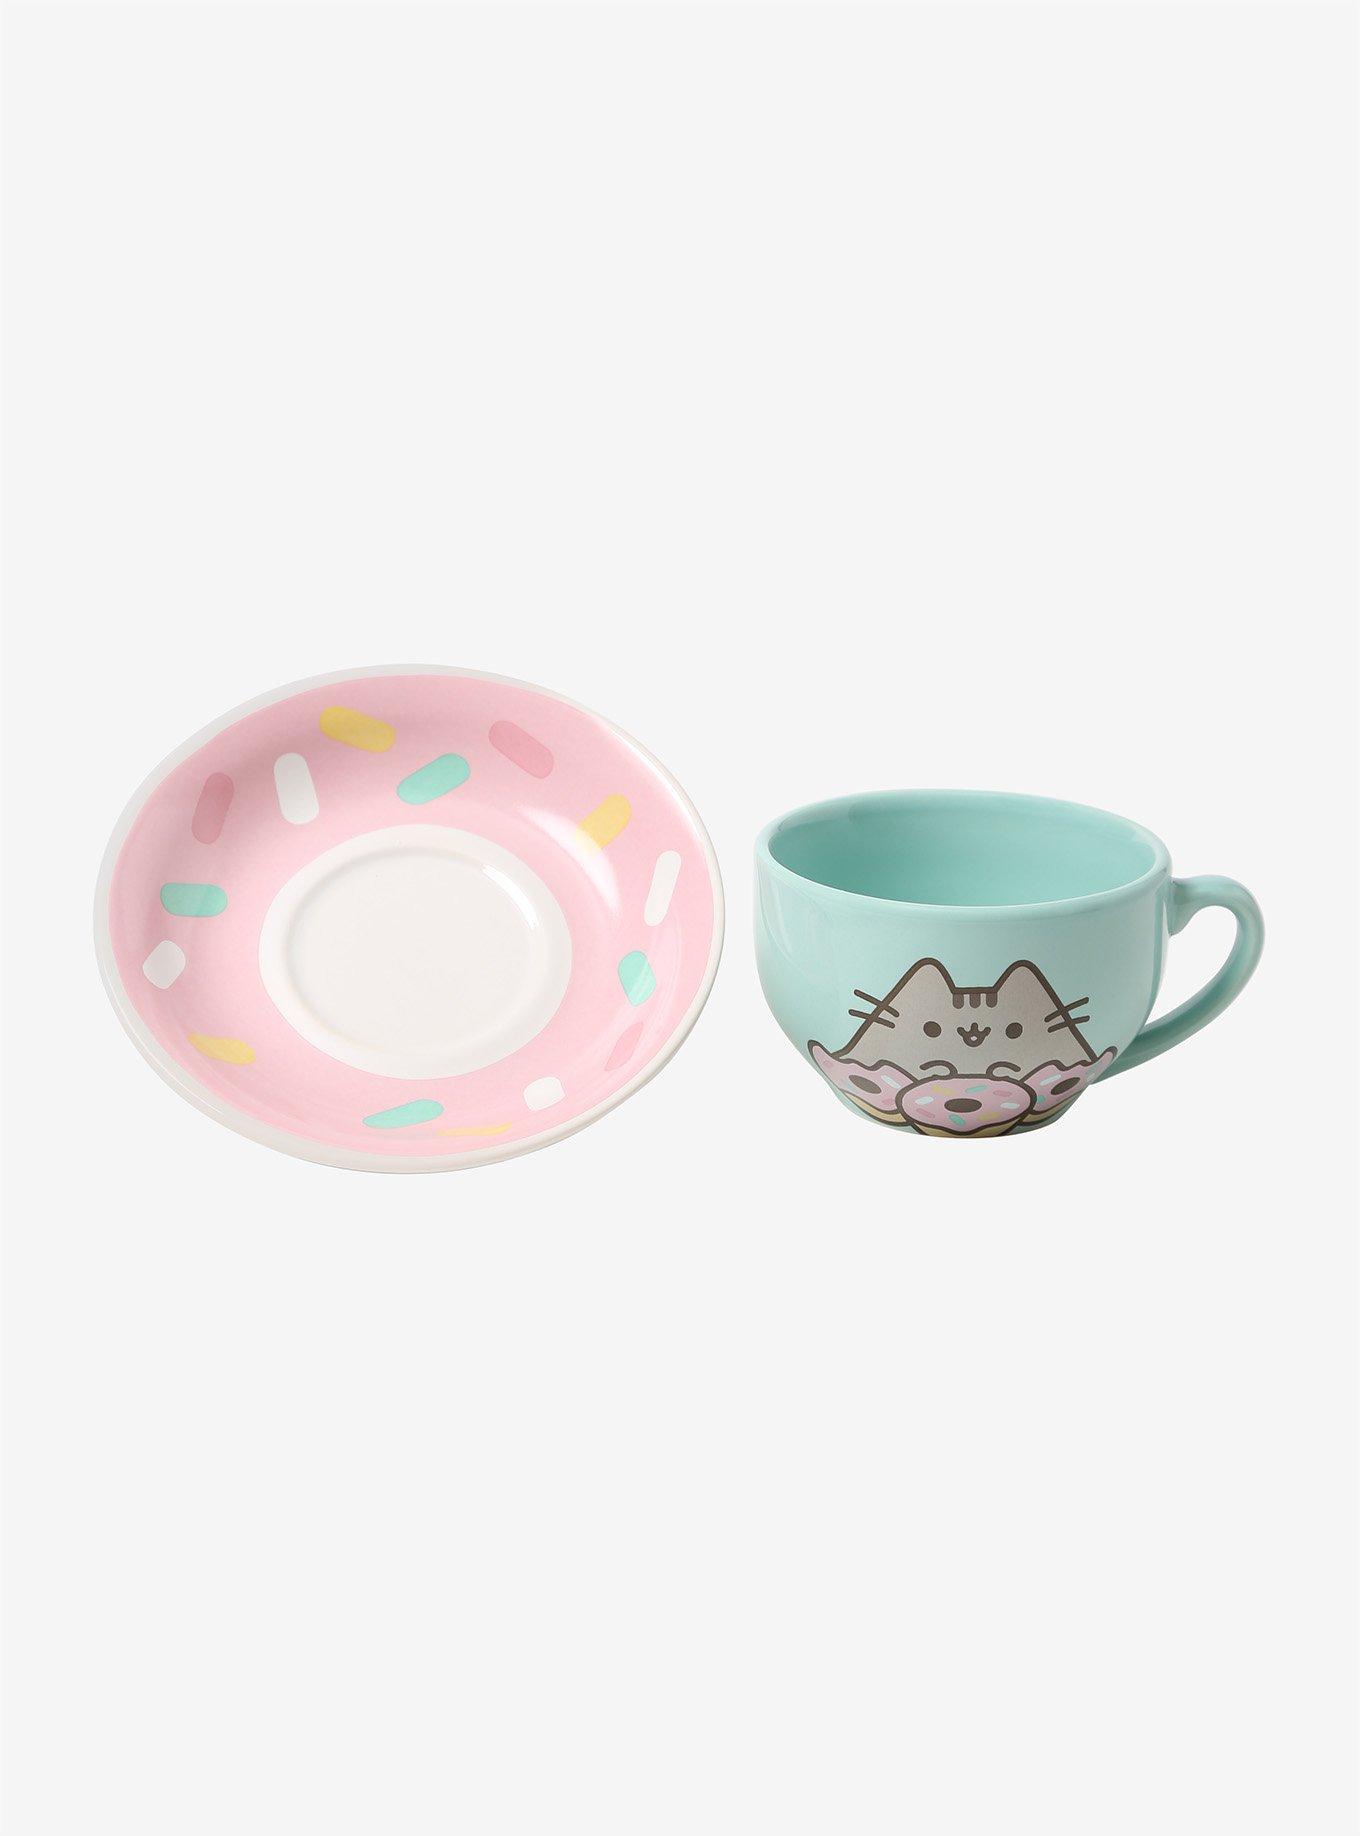 Pusheen Donut Teacup & Saucer Set, , alternate